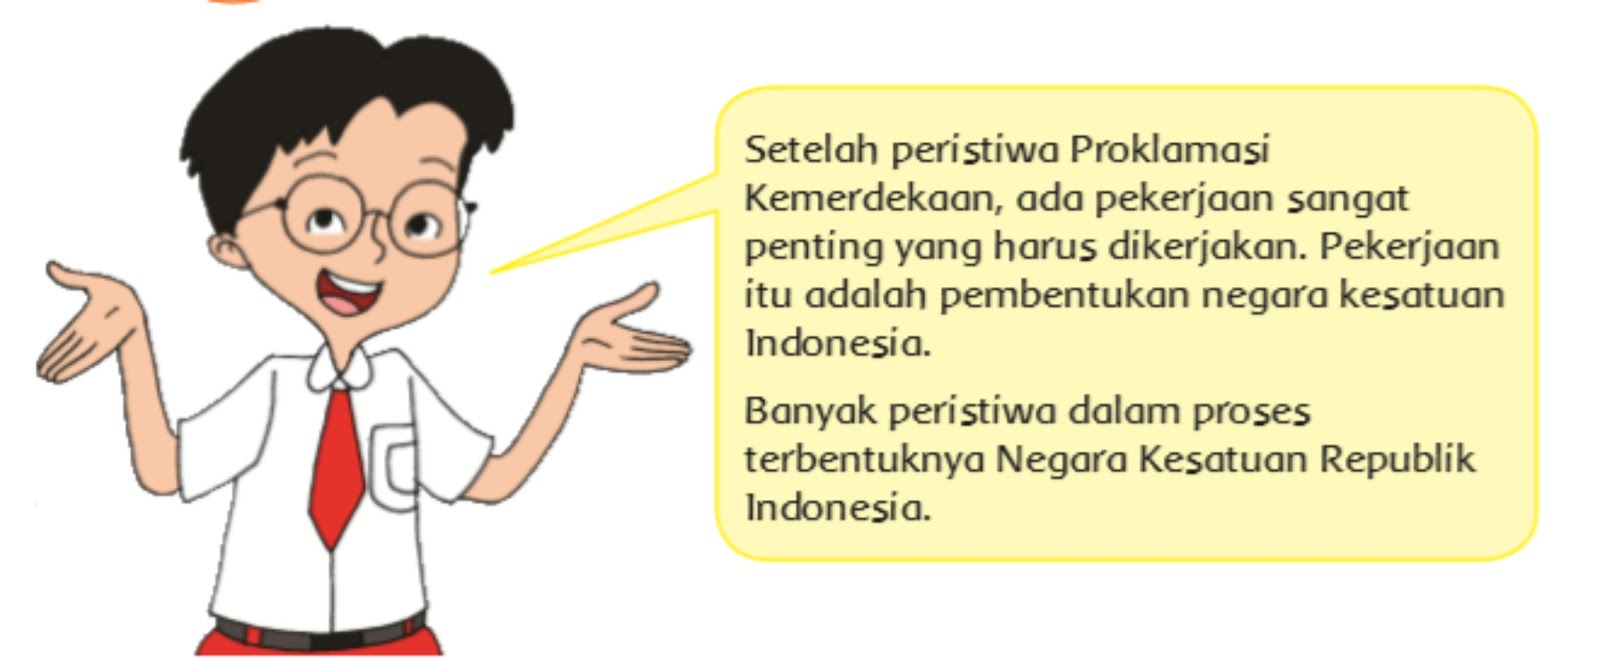 Badan yang dibentuk oleh jepang untuk menggantikan tugas bpupki untuk mempersiapkan kemerdekaan indonesia yaitu ppki diketuai oleh